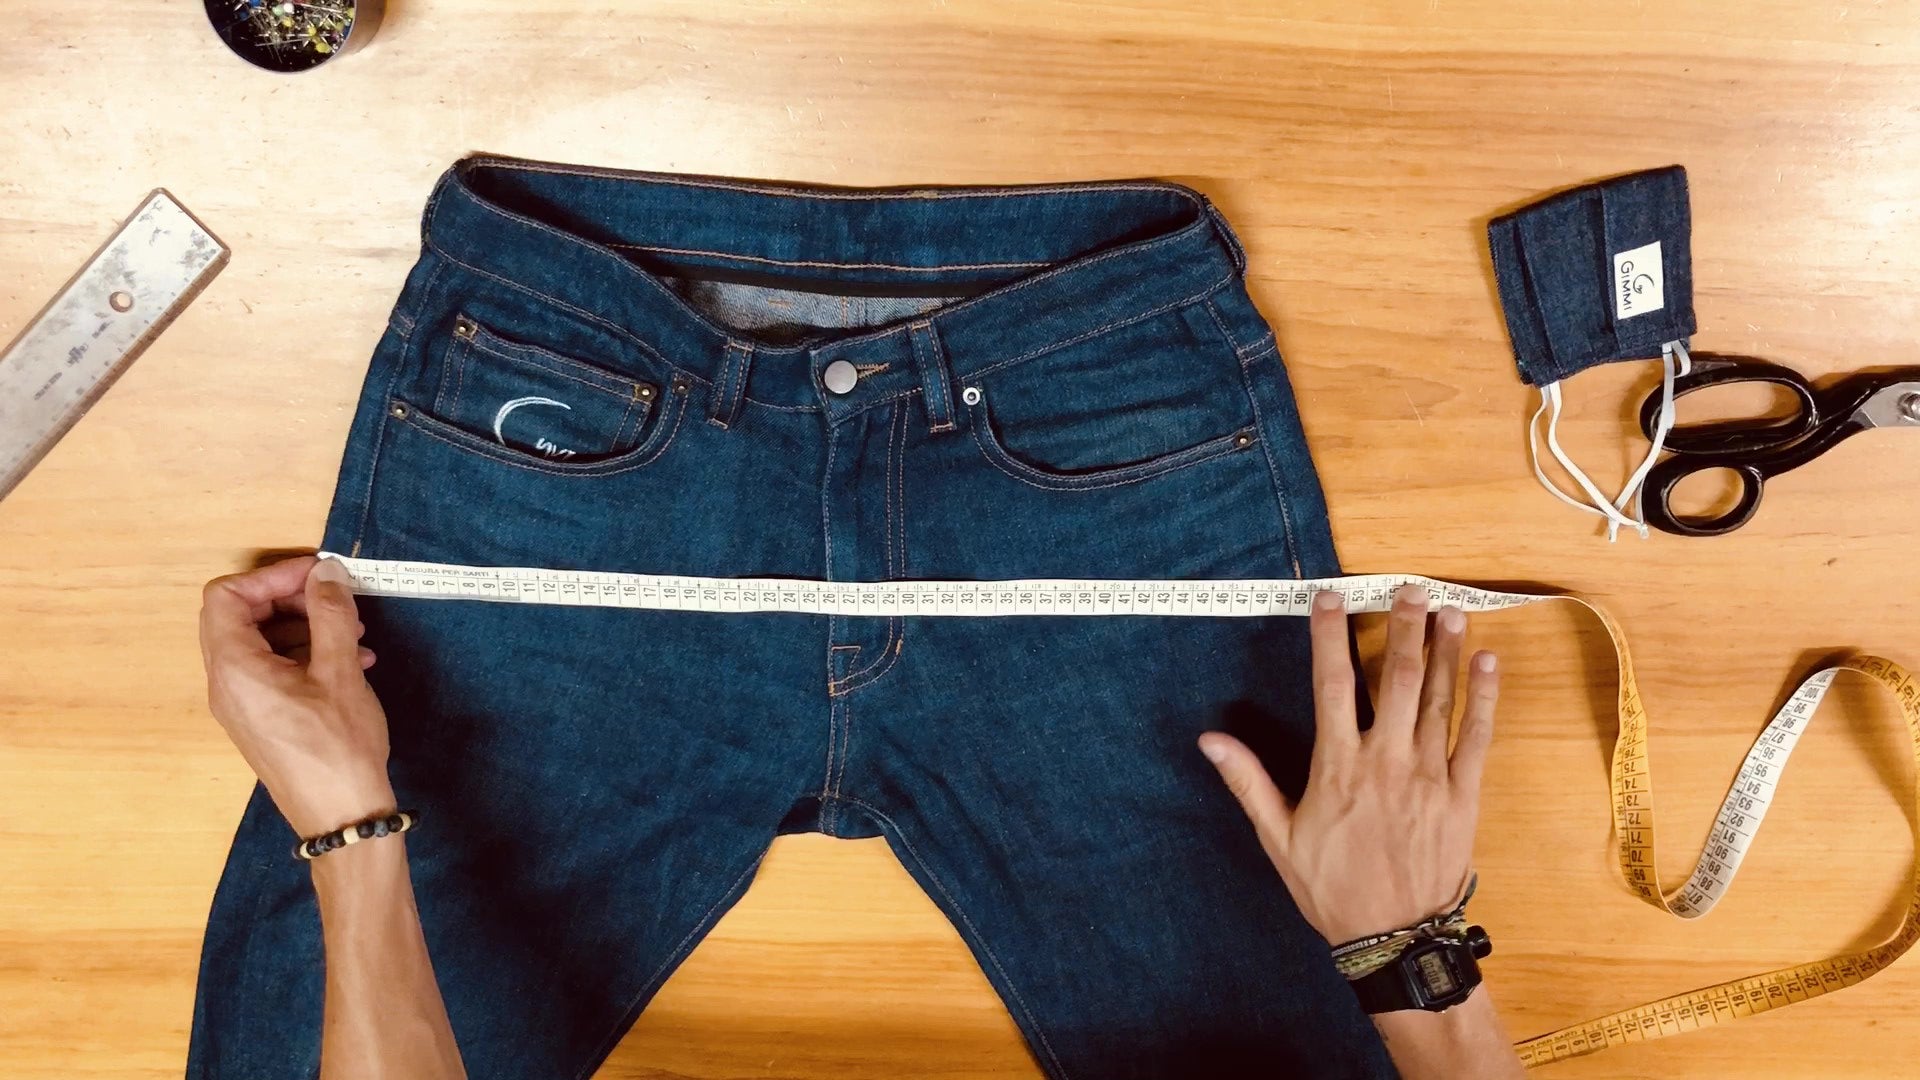 Carica il video: Video illustrativo, su come prendere le principali misure di un vostro pantalone, per evitare possibili resi e abbattere ulteriori impatti ambientali dovuti alle spedizioni.Grazie della collaborazione❤️❤️